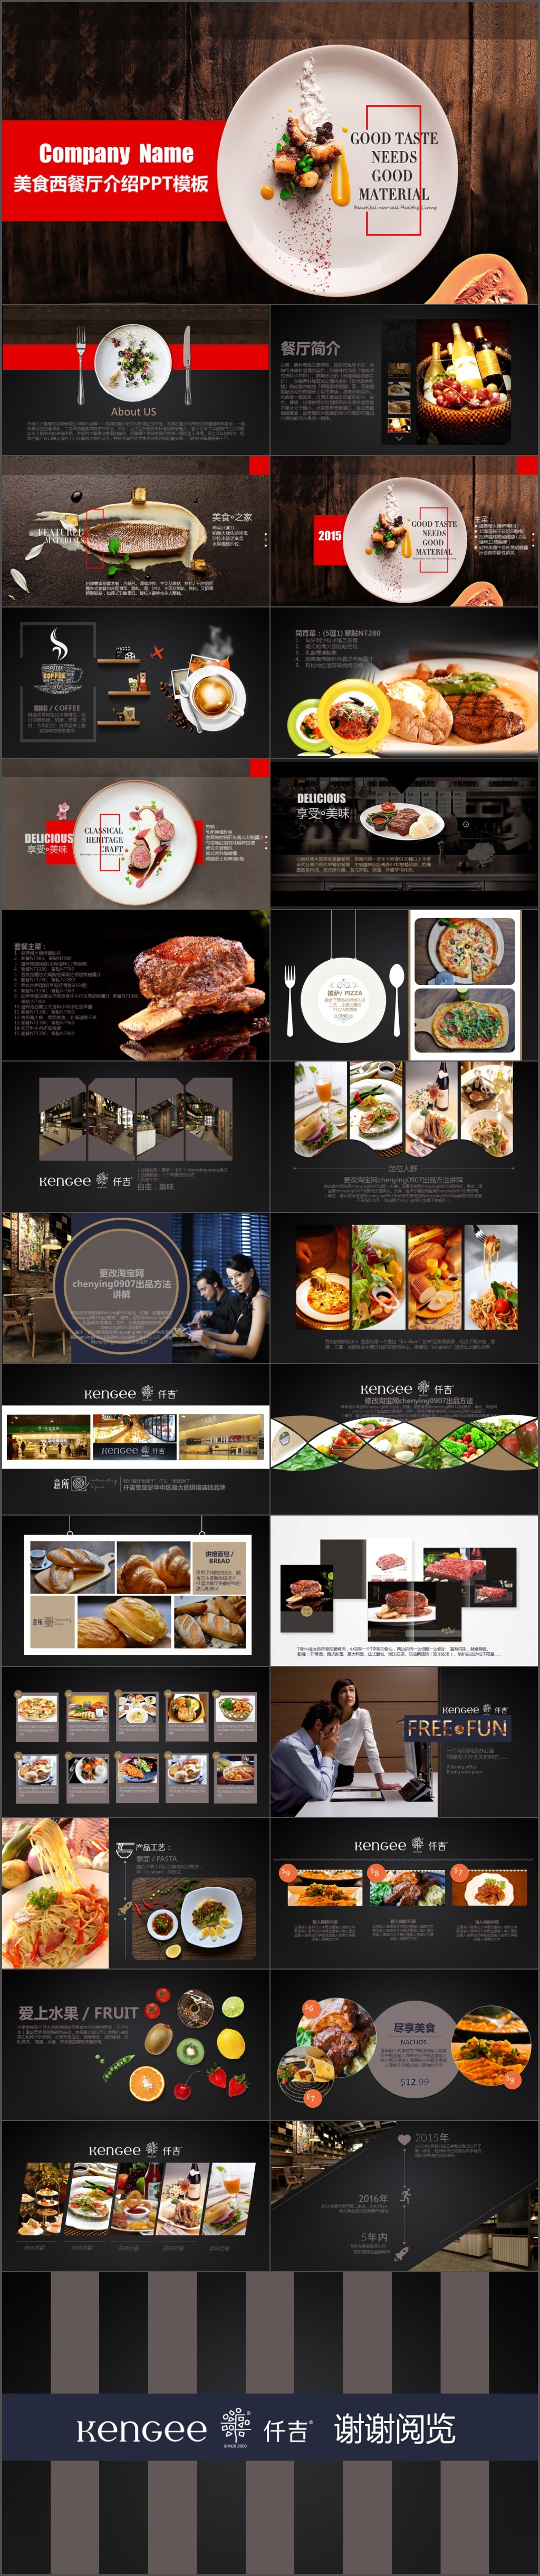 高端美食文化宣传西餐厅介绍品牌宣传PPT模板(245)